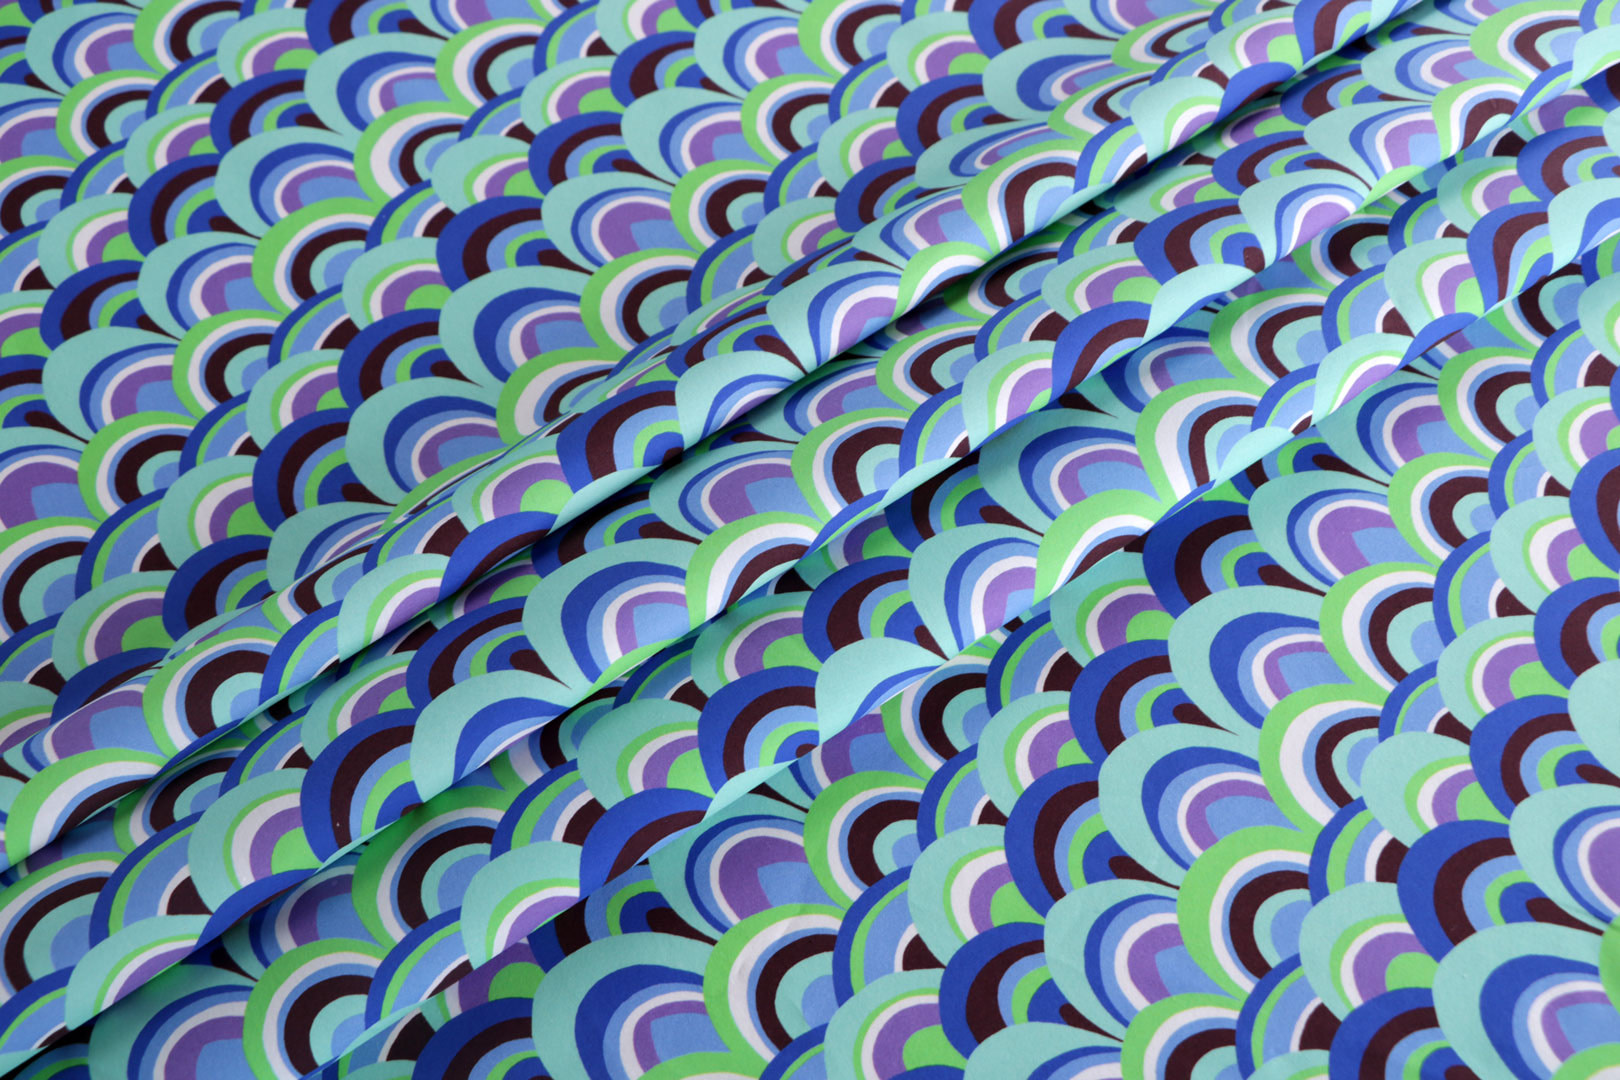 Tessuto Tela di cotone Blu, Multicolore, Verde, Viola in Cotone per abbigliamento